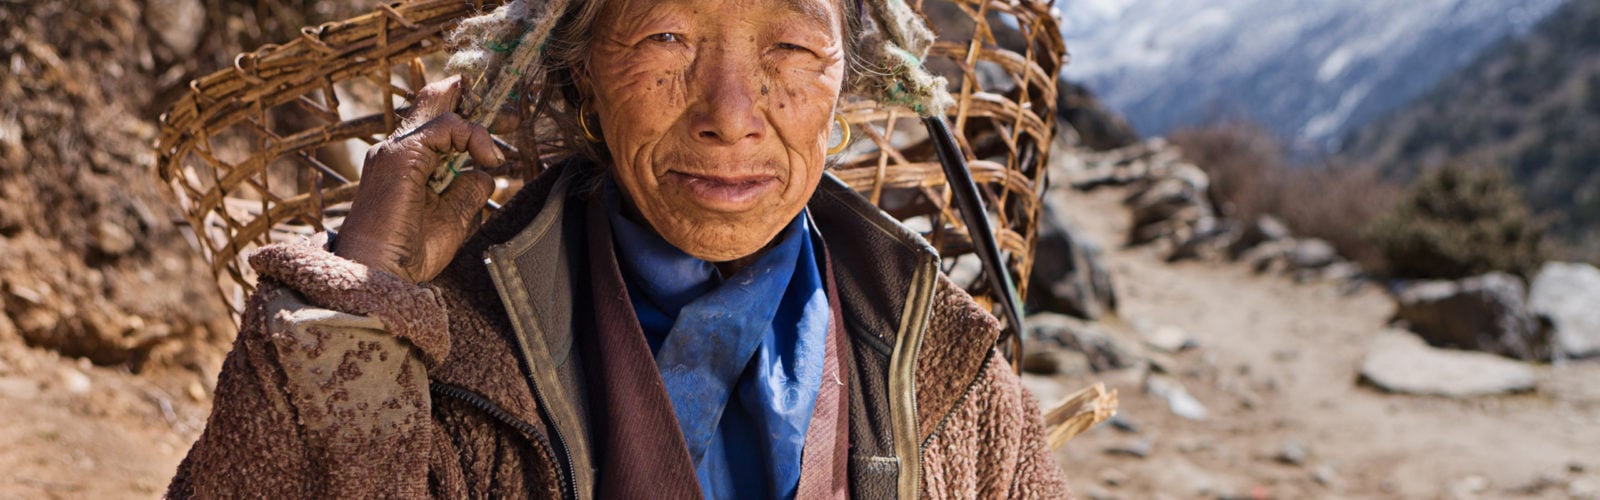 nepal-woman